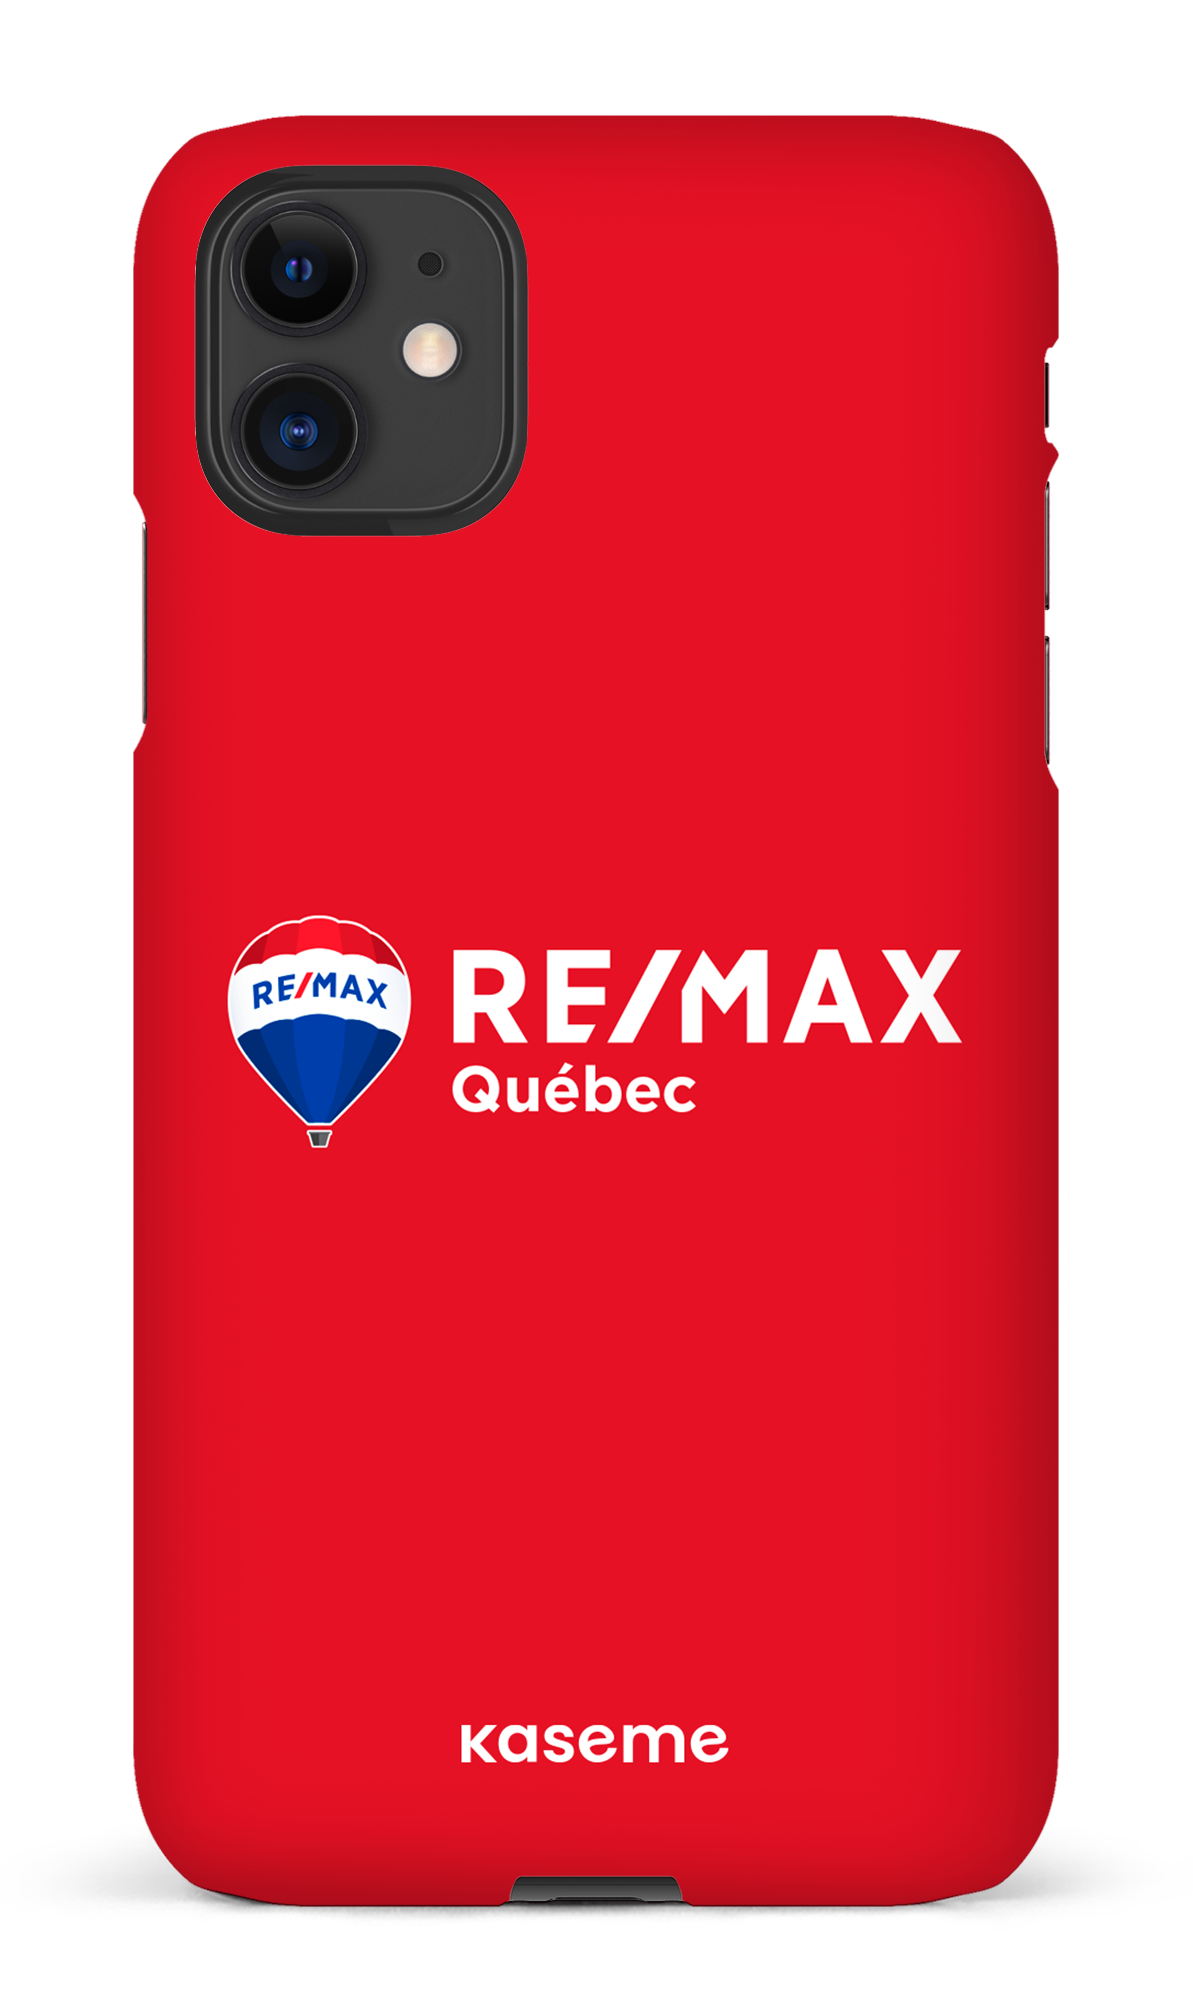 Remax Québec Rouge - iPhone 11